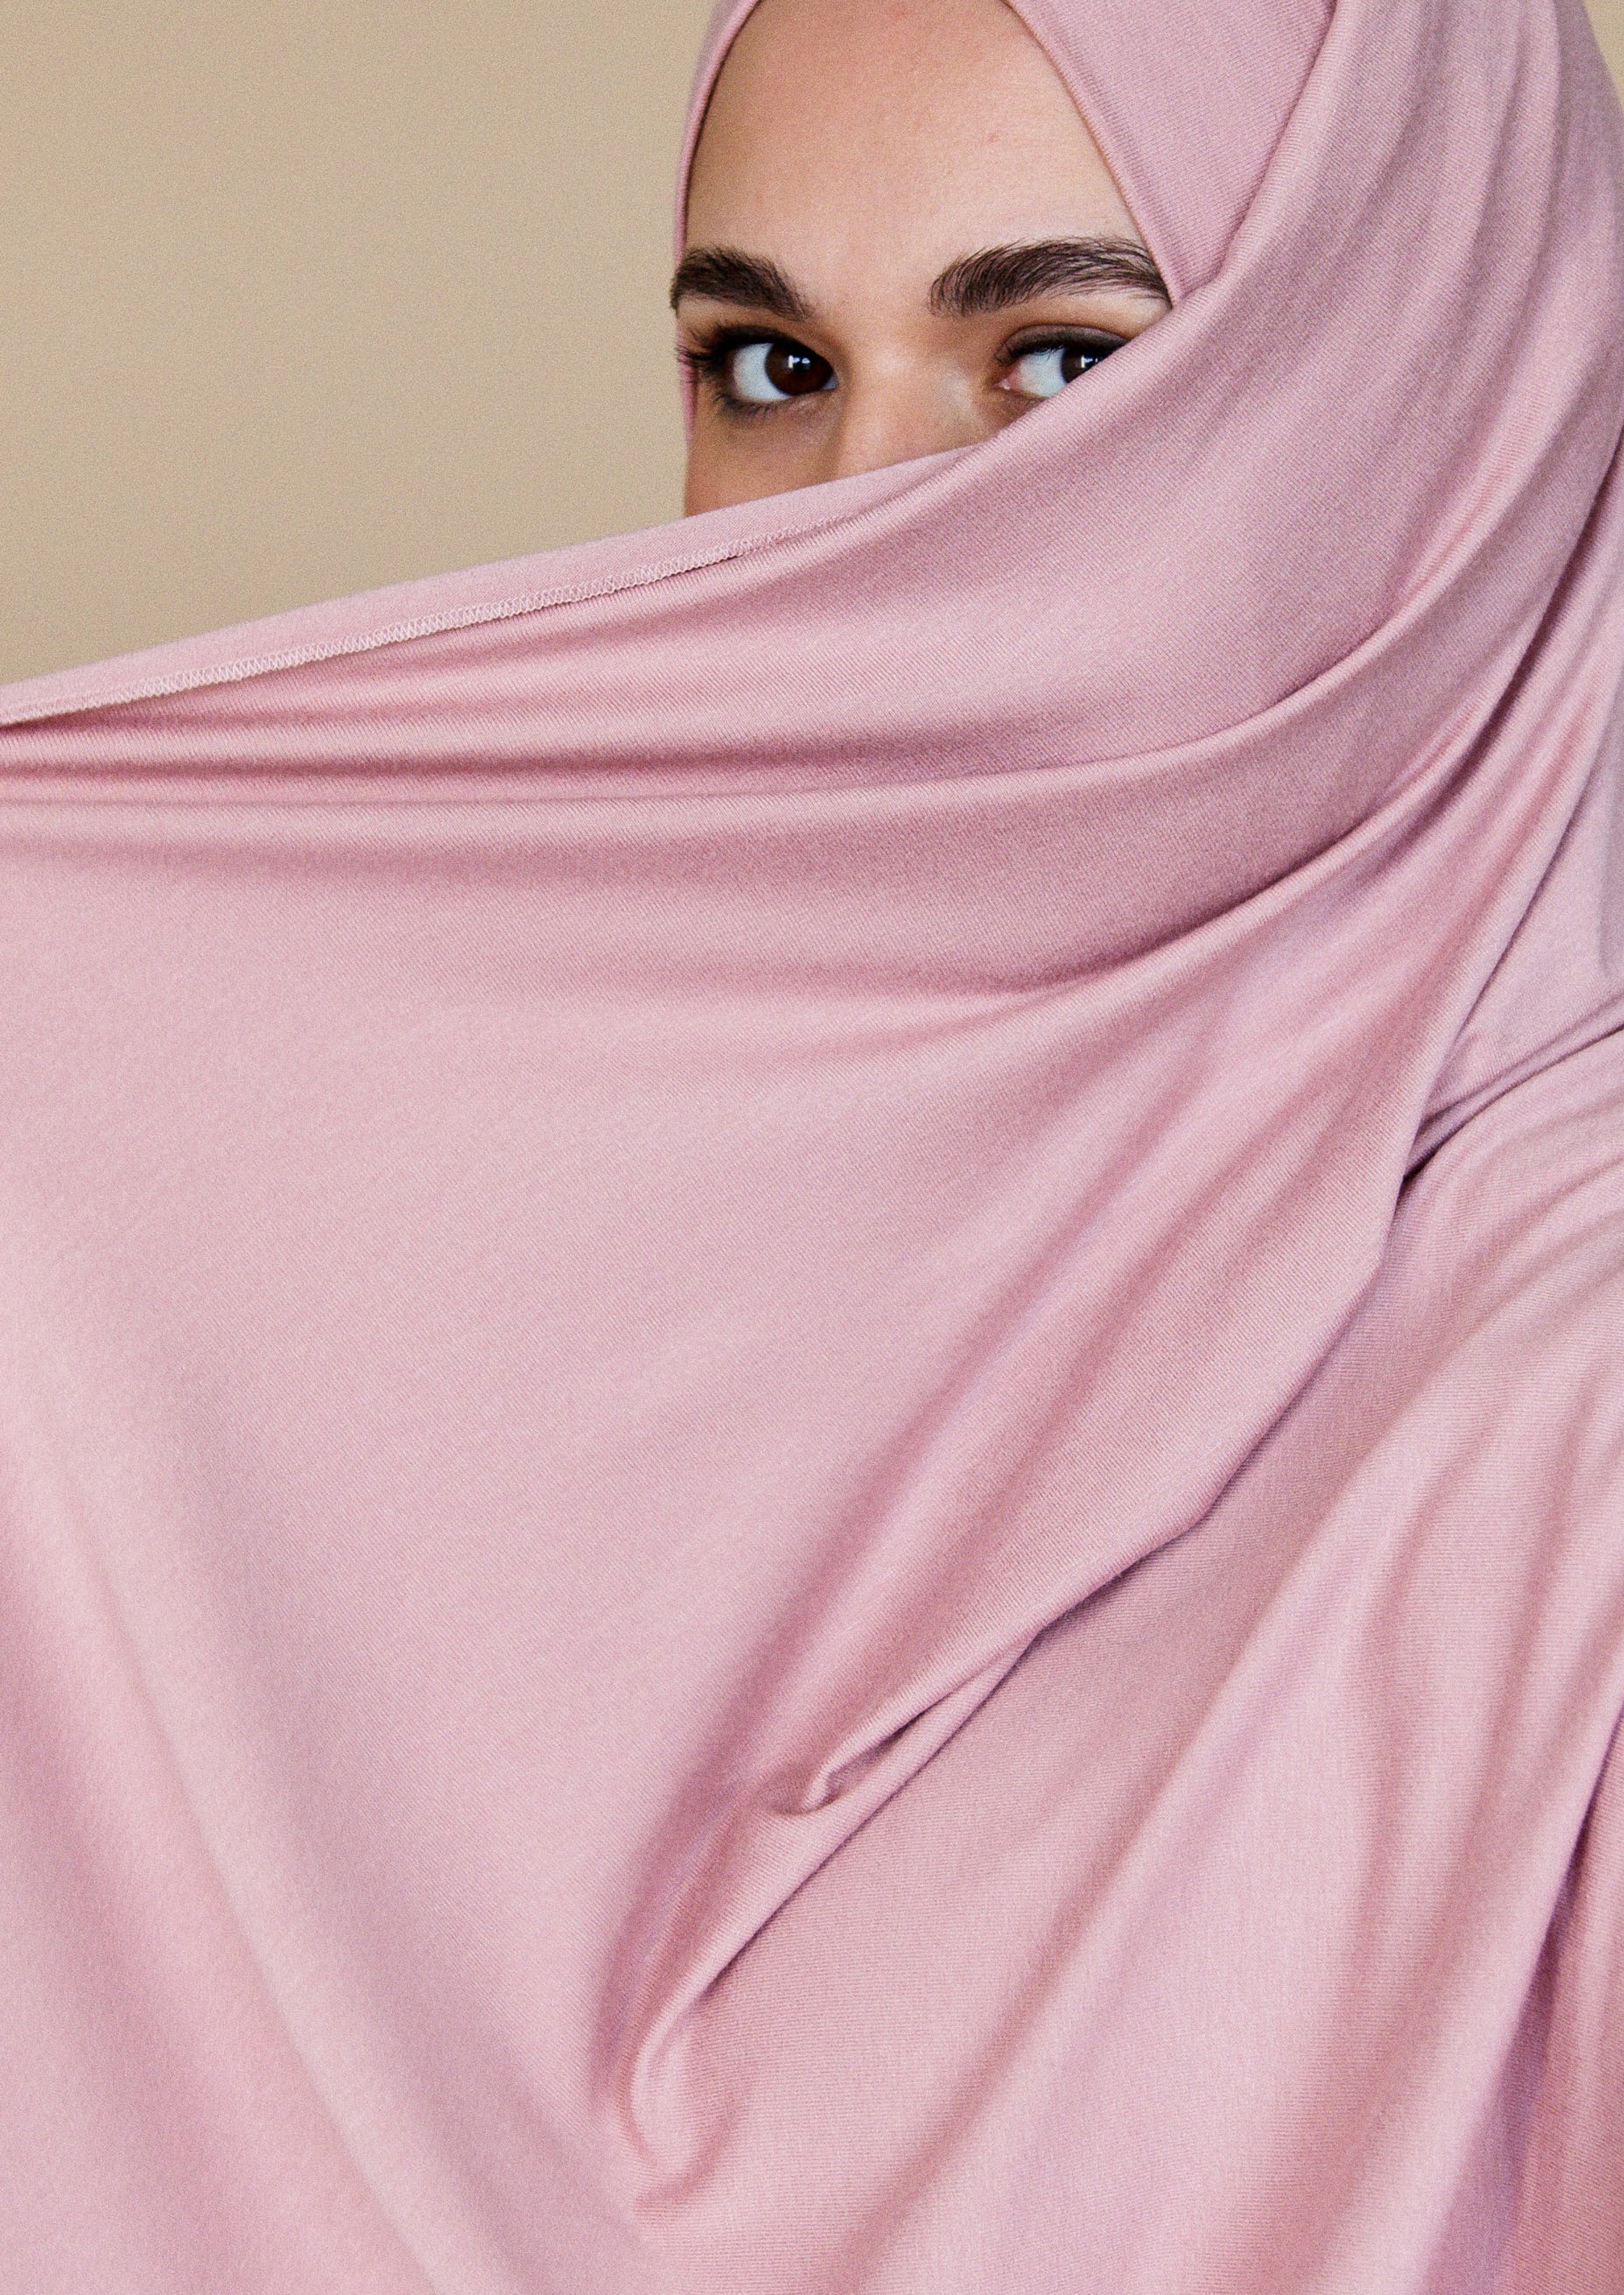 Frau, deren Gesicht bis auf die Augen von einem rosa Hijab verdeckt ist